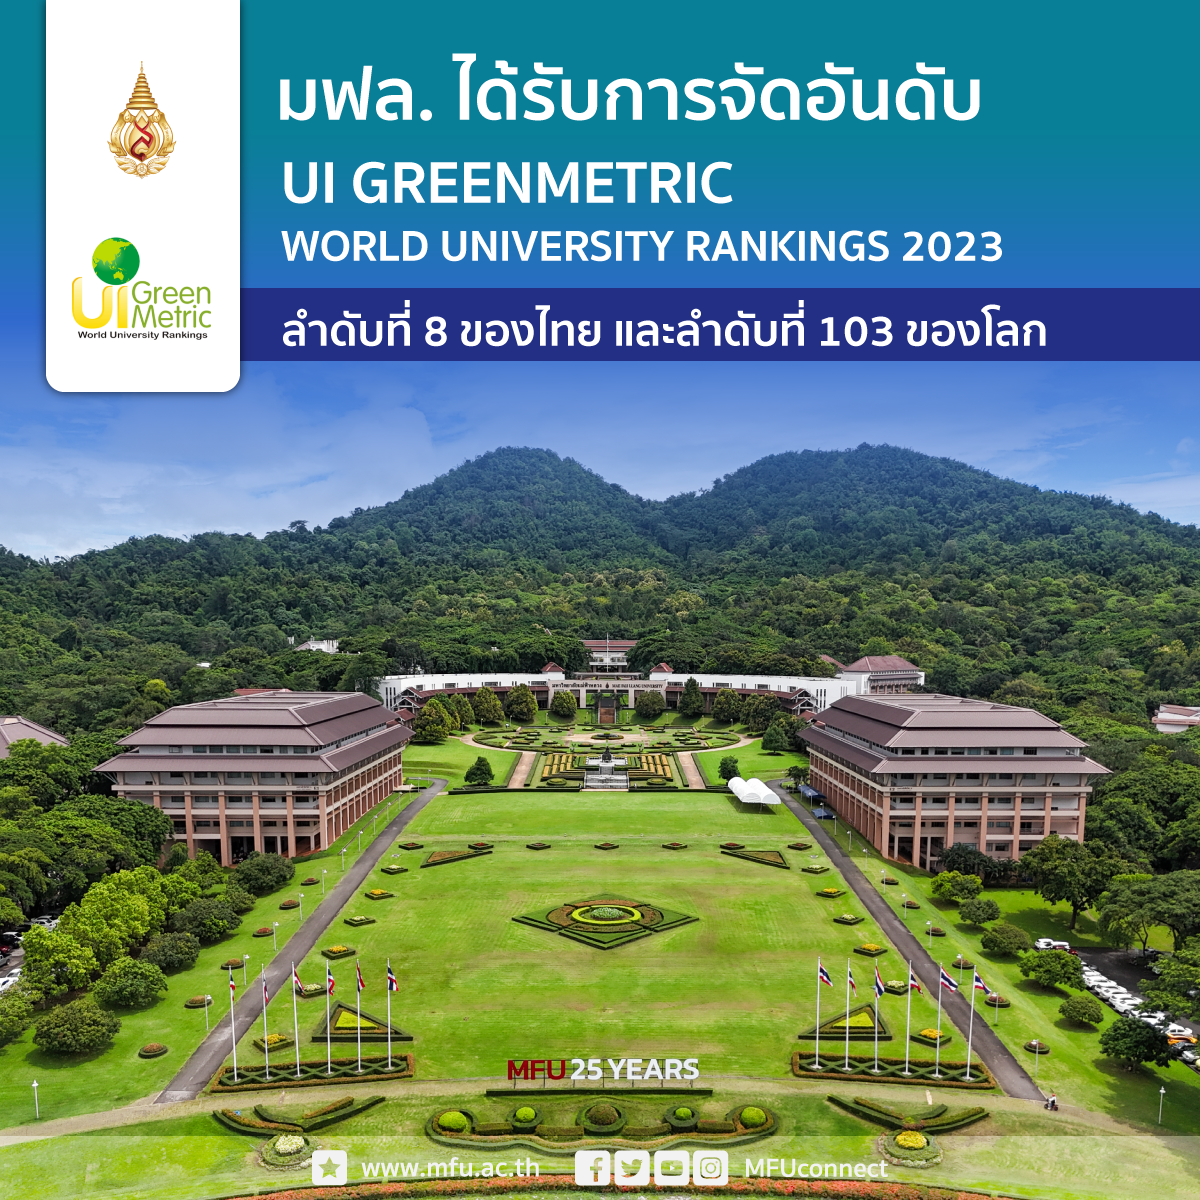 มฟล. ได้รับอันดับที่ 103 ของโลก และอันดับที่ 8 ของไทย จากการจัดอันดับมหาวิทยาลัยสีเขียวที่เป็นมิตรกับสิ่งแวดล้อมระดับโลก 2023 (UI GreenMetric World University Rankings)